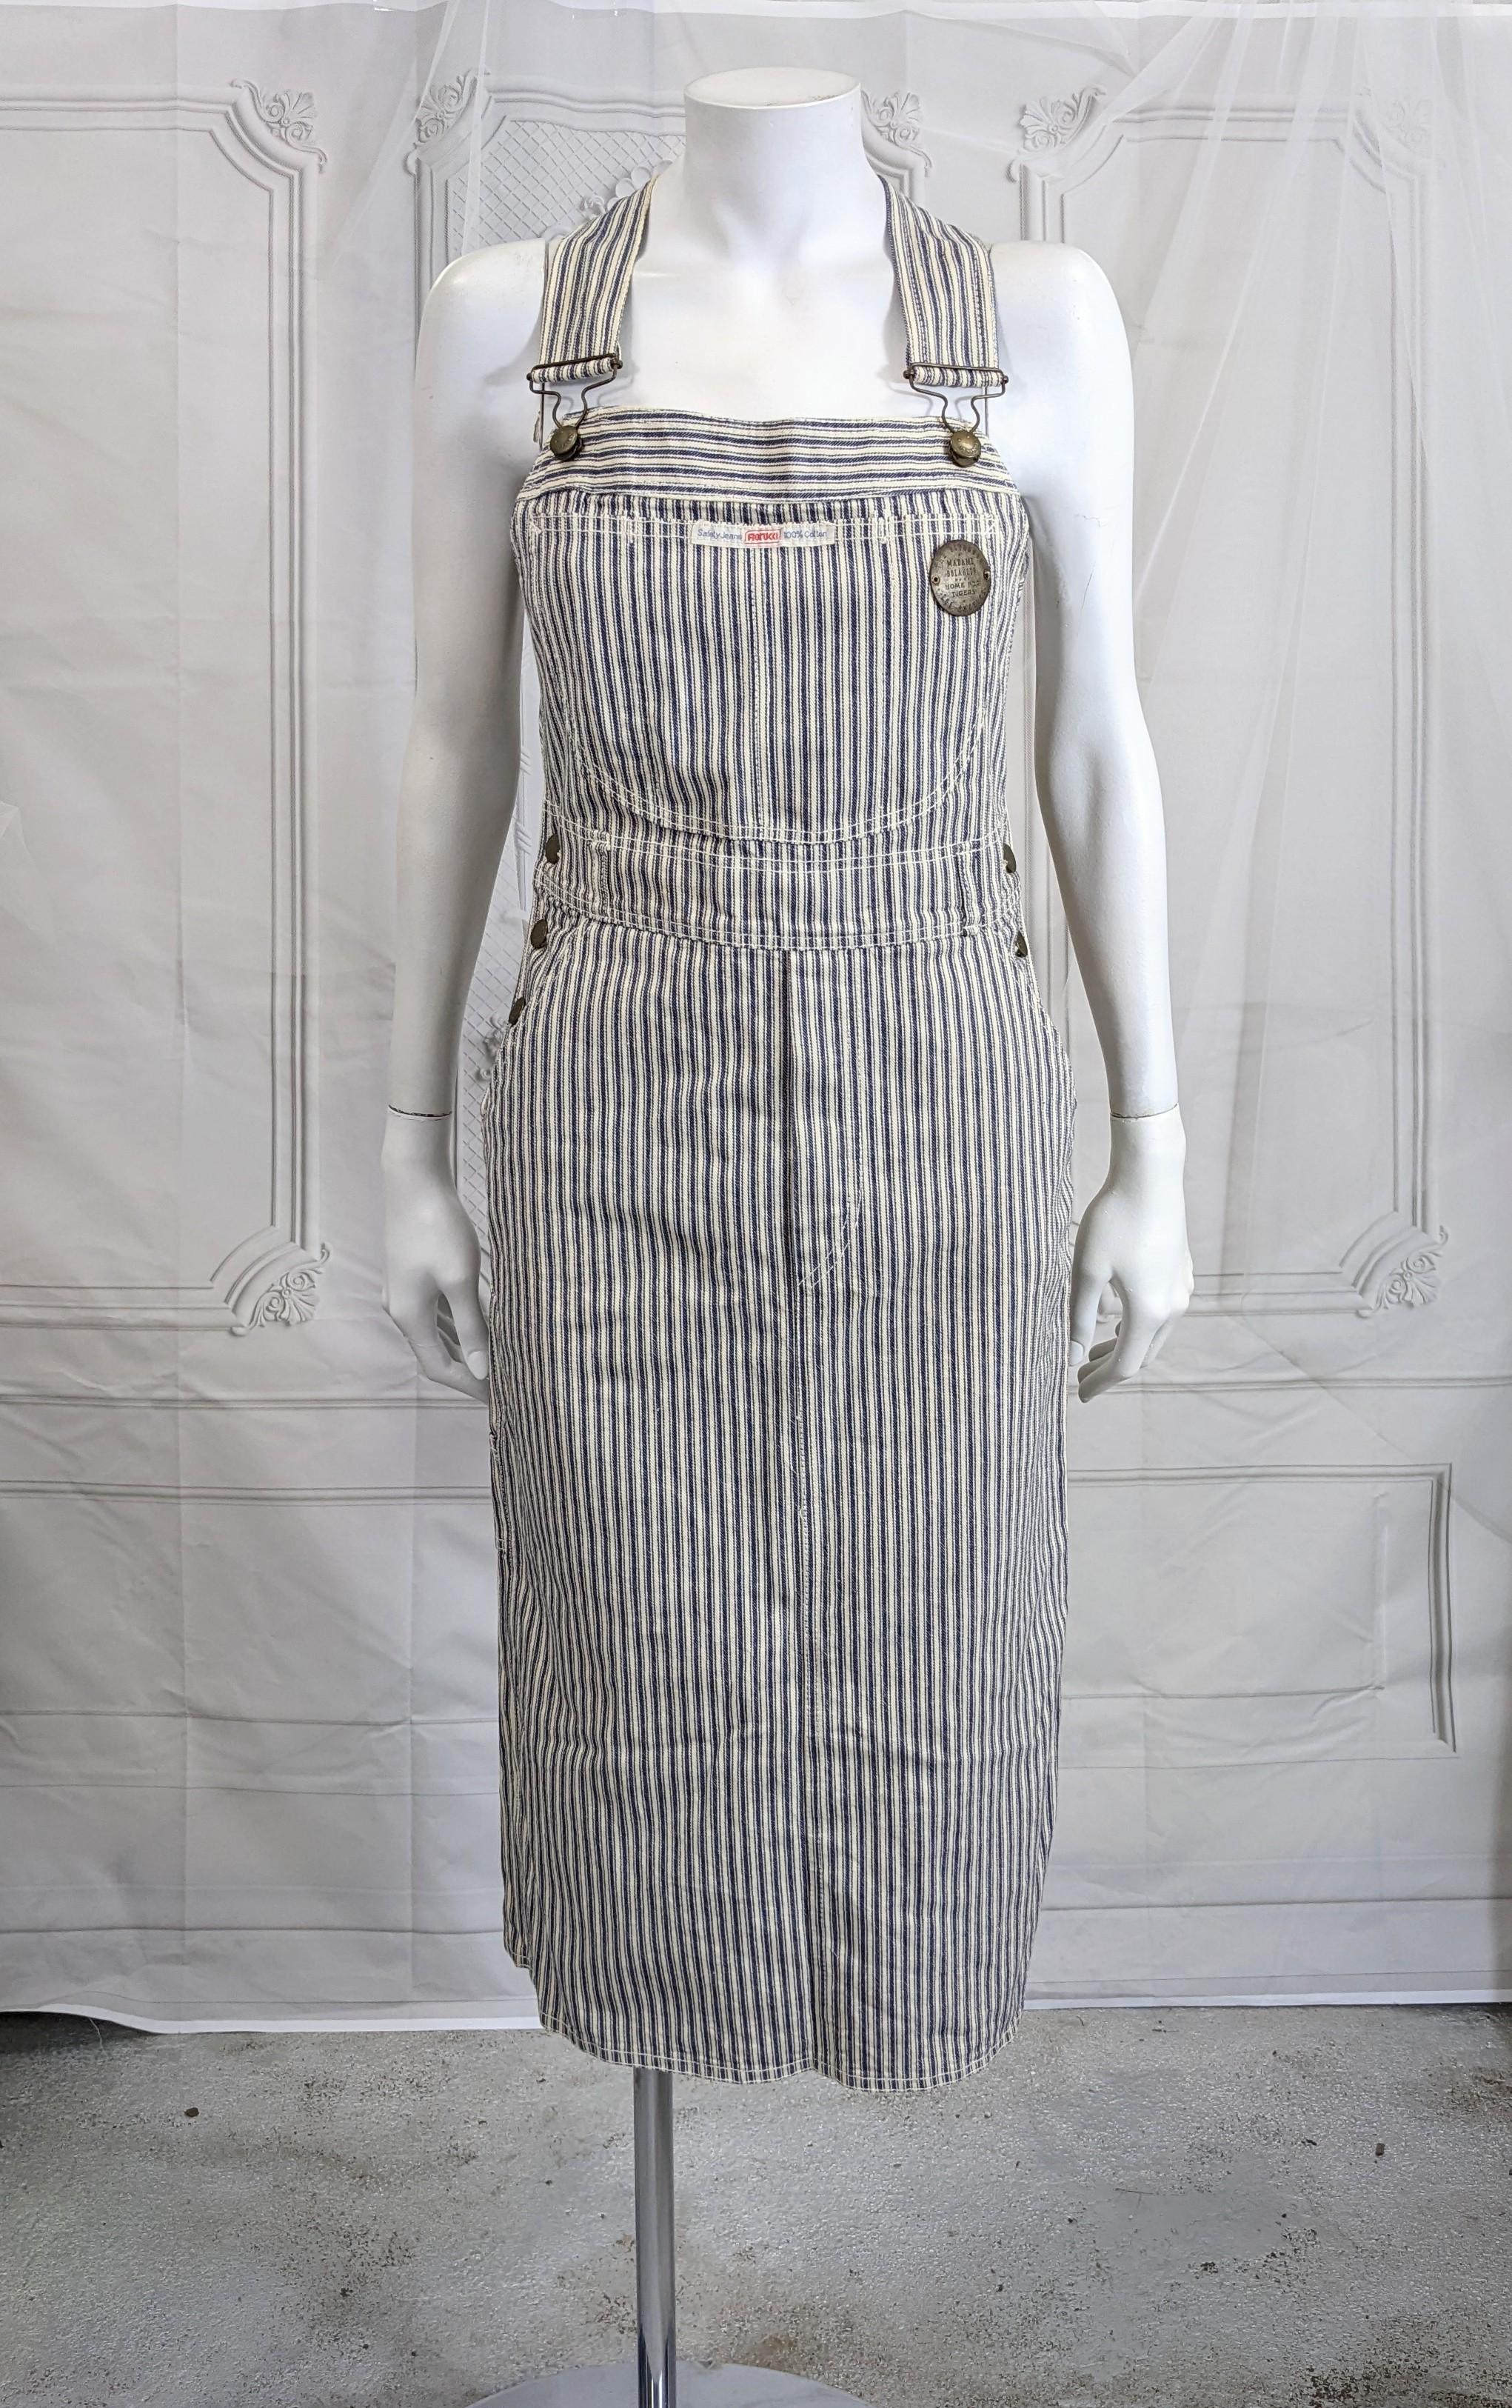 Fiorucci Cotton Denim Ticking Striped Overall Dress aus den 1980er Jahren. Klassisches Gesamtdesign mit vielen tollen, schönen Details und Nähten. Gekreuzte Rückentrageriemen, falscher Hosenschlitz und sogar Schlaufen für einen Gürtel.  Vintage